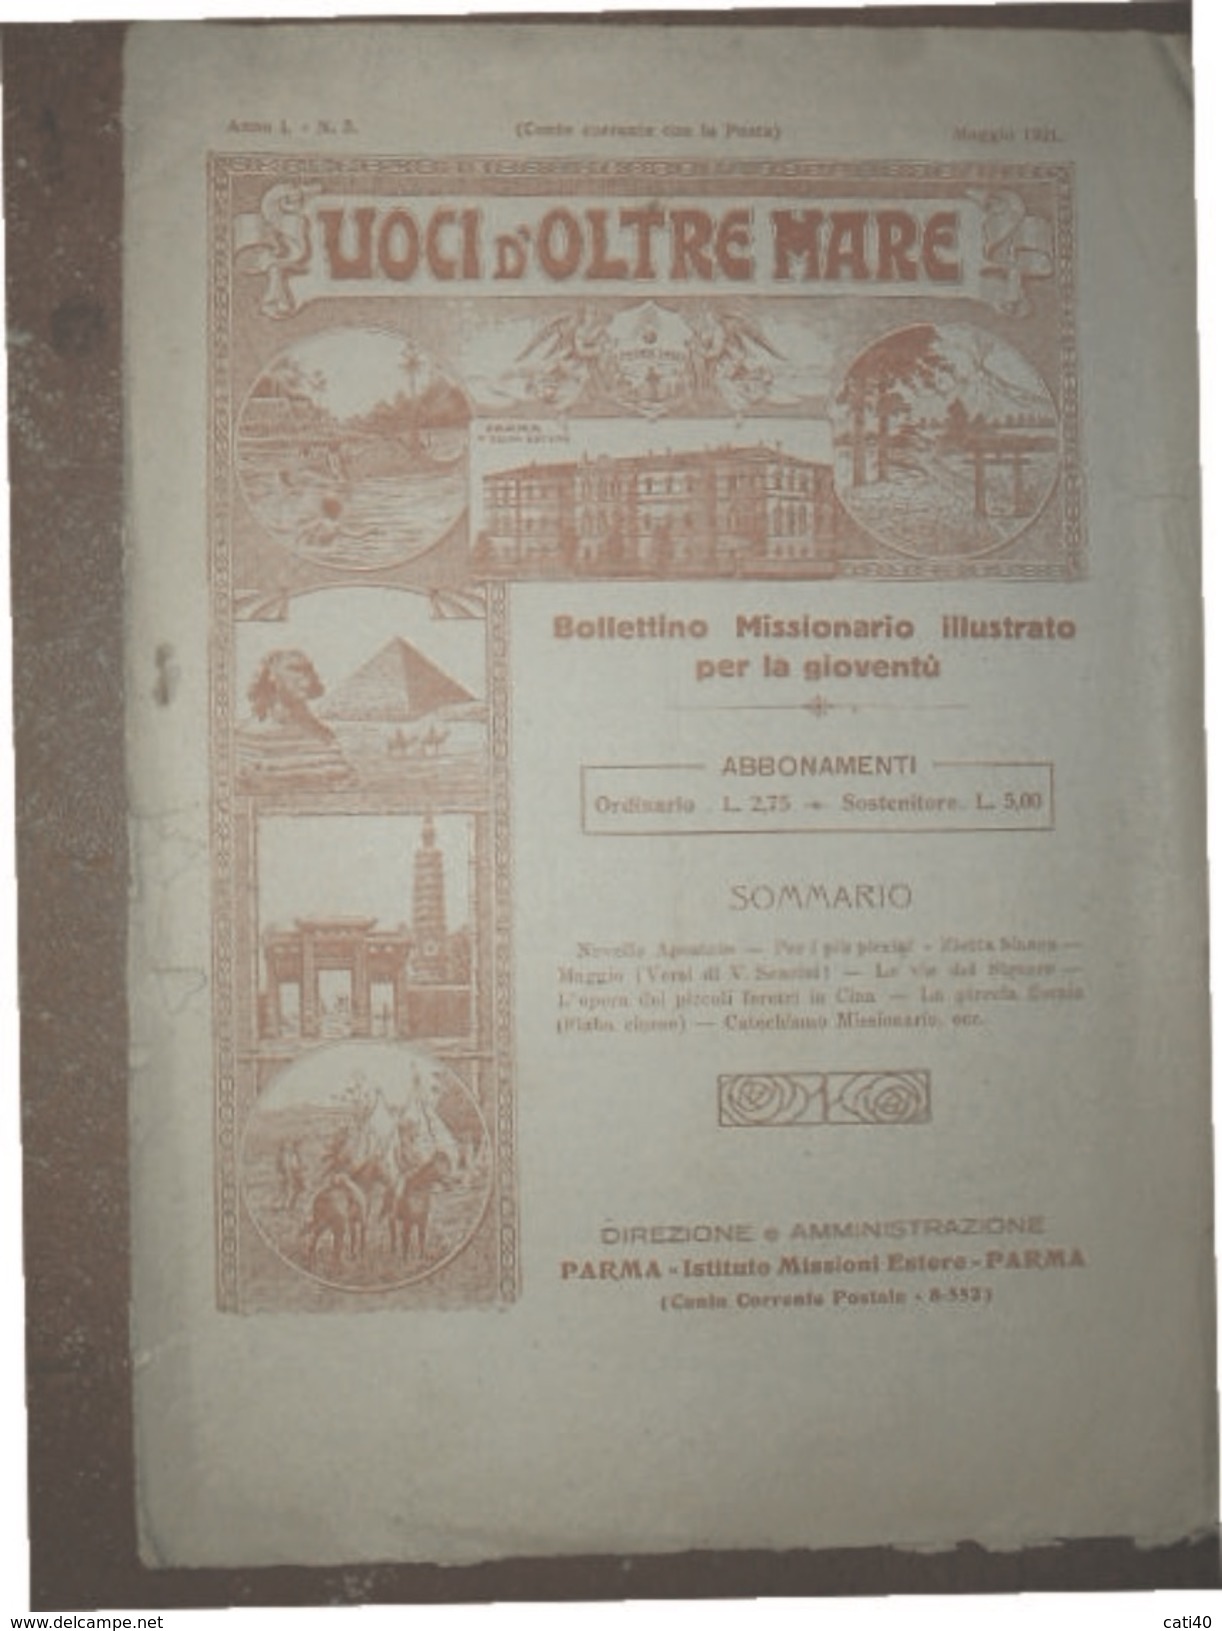 VOCI D'OLTREMARE  BOLLETTINO MISSIONARIO ILLUSTRATO PARMA IST.MISSIONI ESTERE MAGGIO 1921 - Biografia